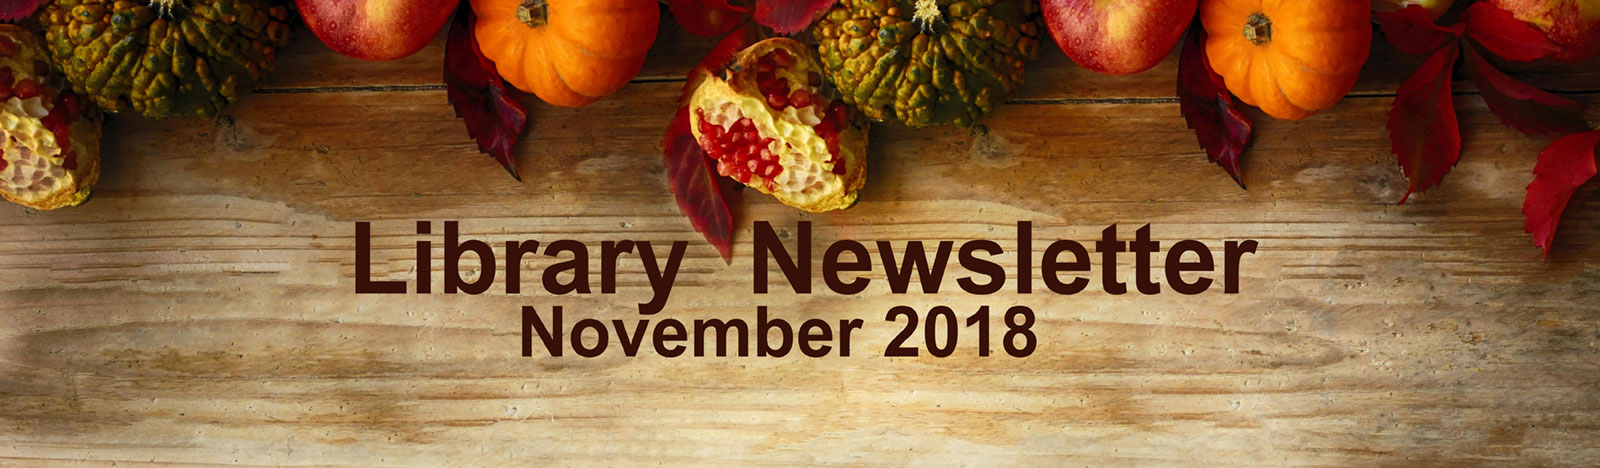 Library Newsletter - November 2018